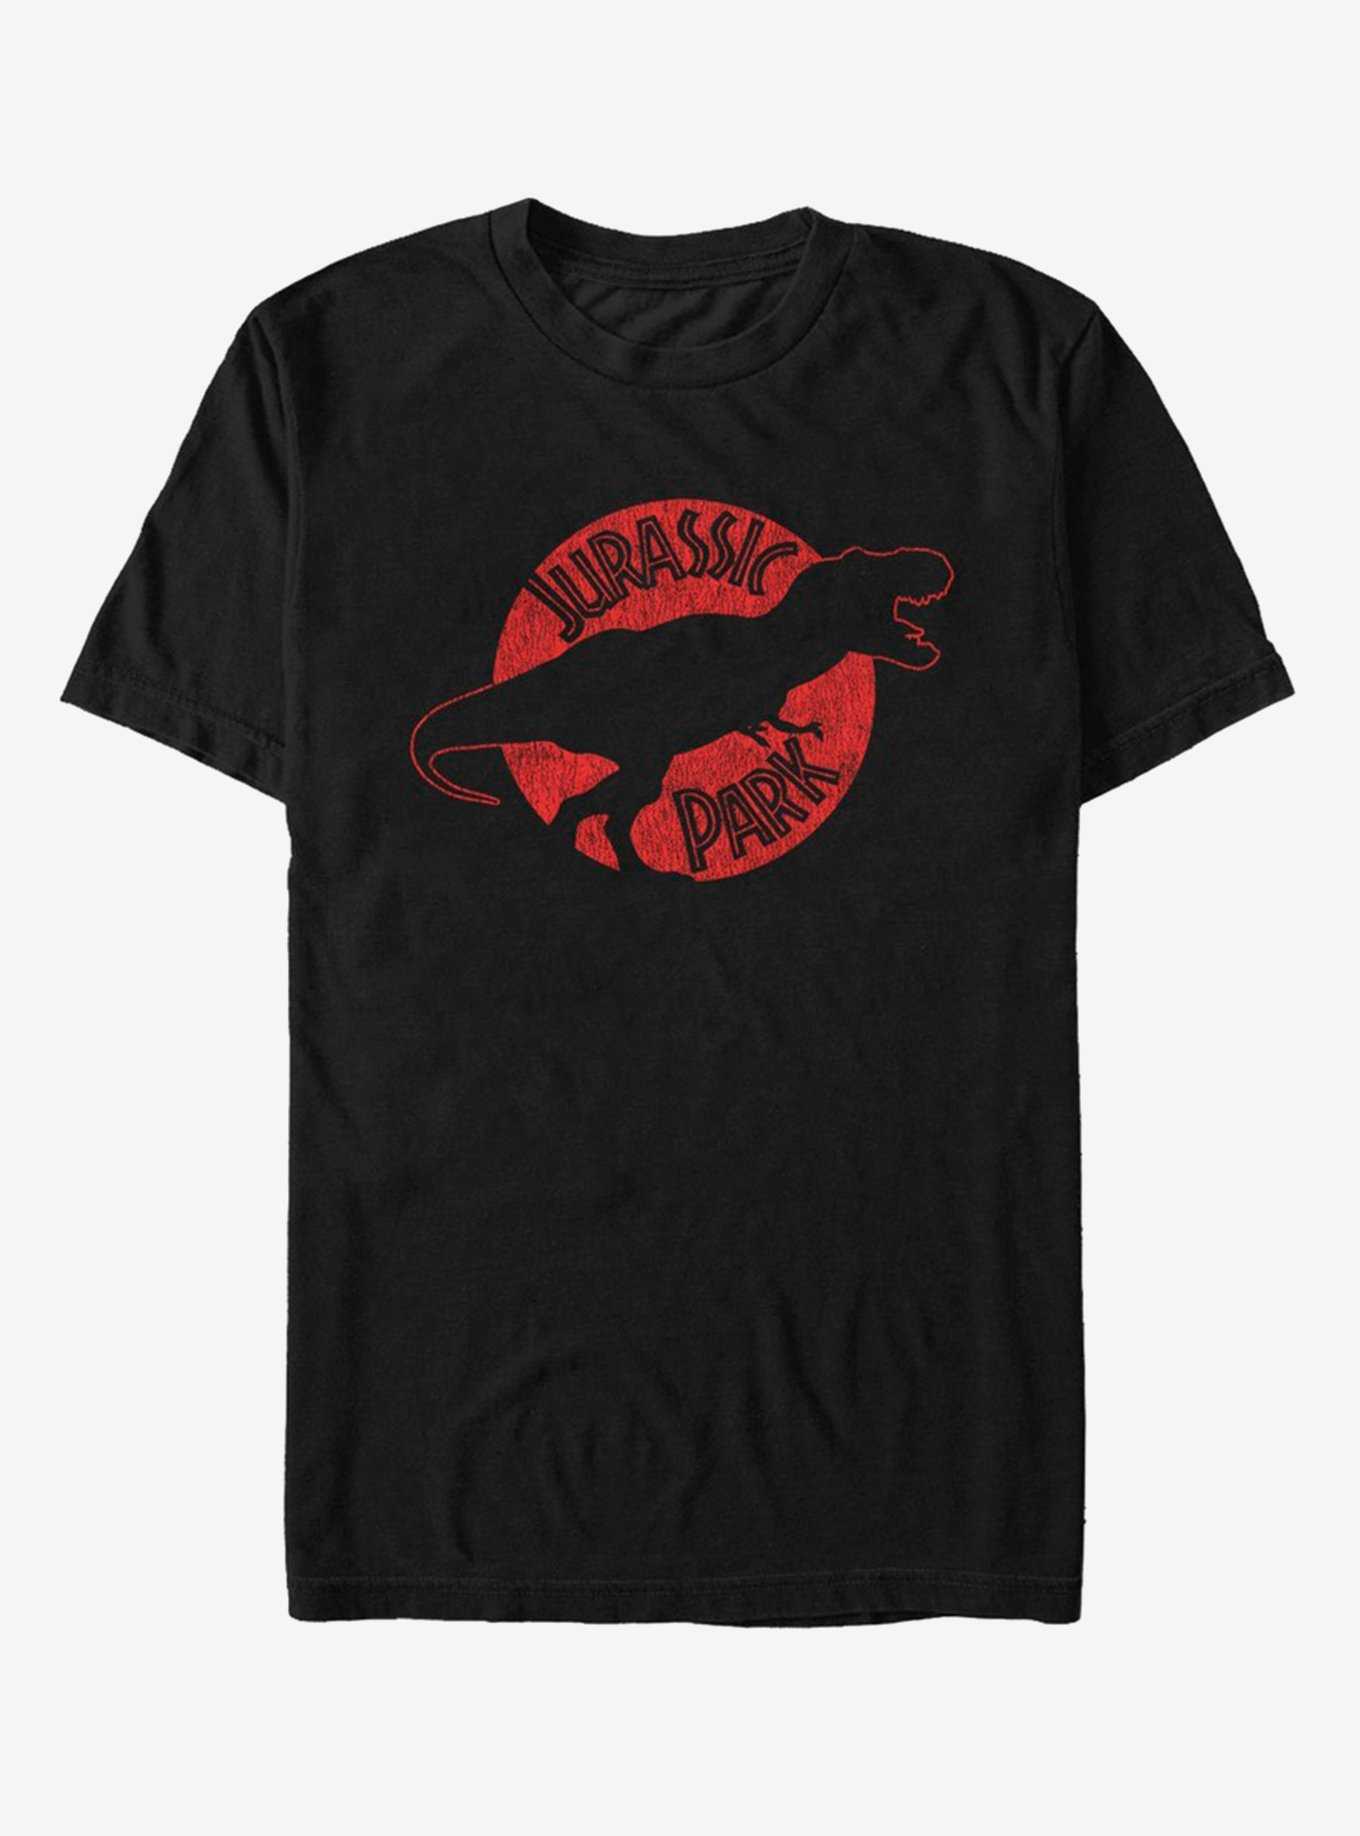 Jurassic Park Epoch T-Shirt, , hi-res